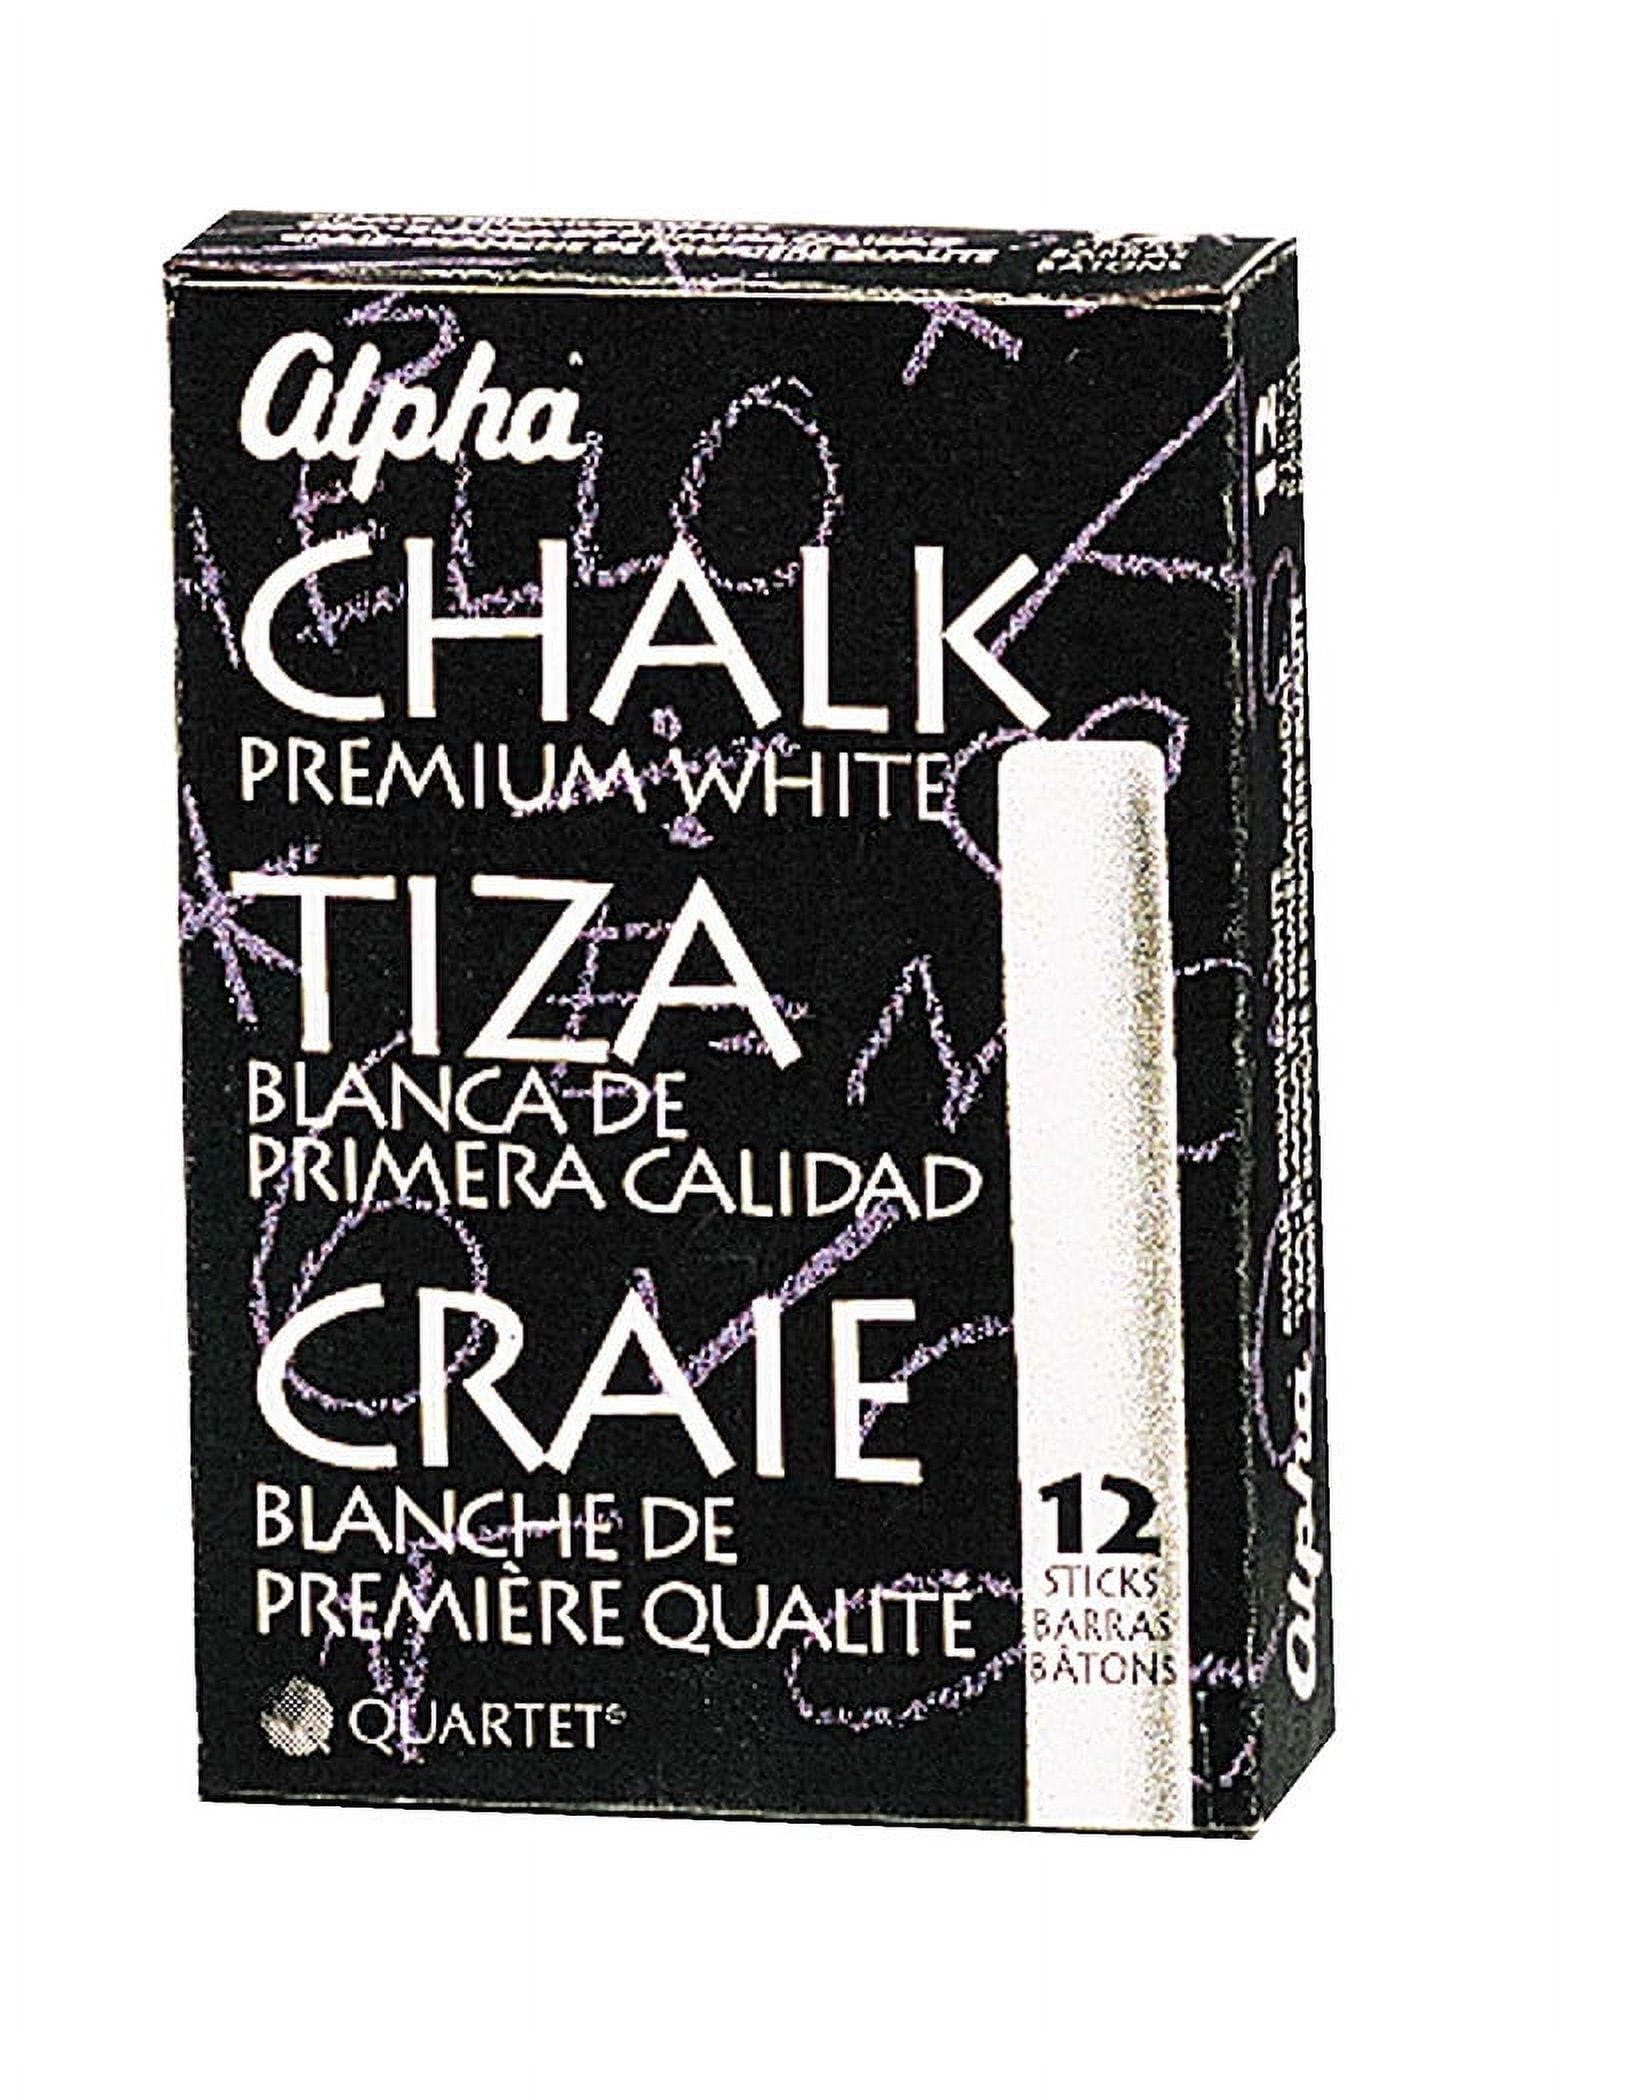 Kedudes Non-Toxic White Dustless Chalk (12 ct Box) and Colored Dustless Chalk (12 ct Box) Bundle + Premium Chalkboard Eraser